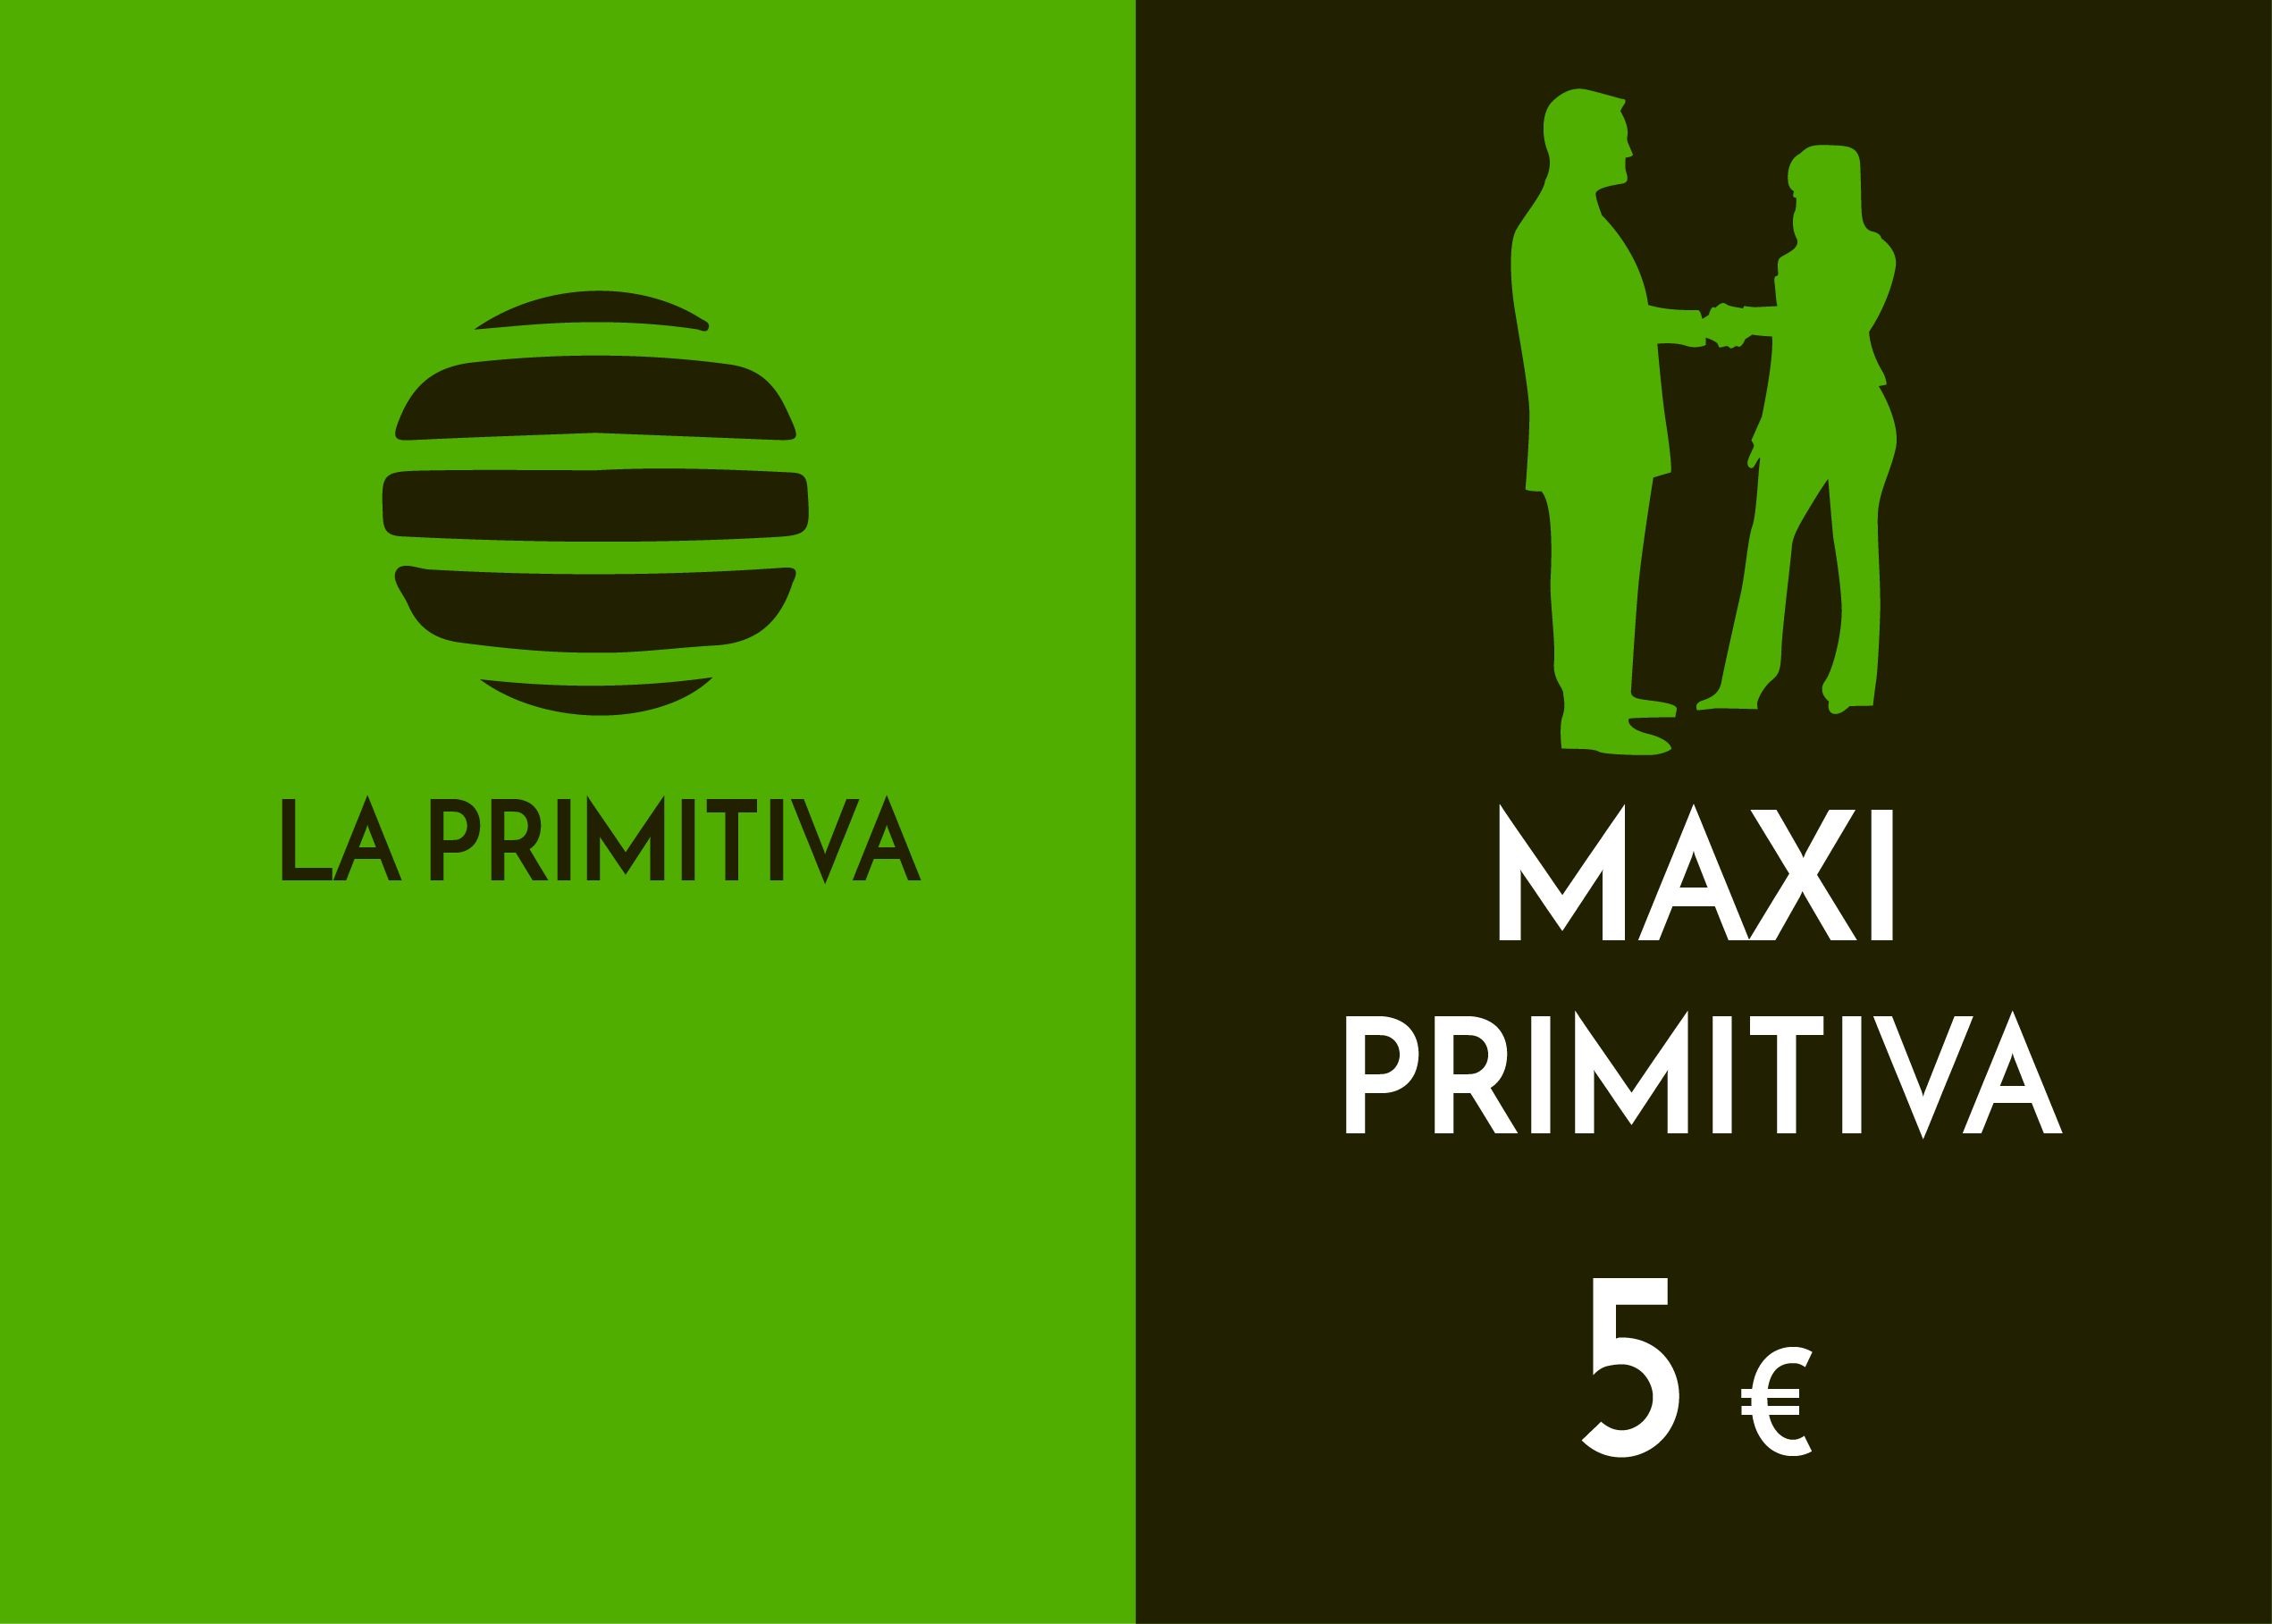 Sociedade - maxiprimitiva - 5,00 Euros